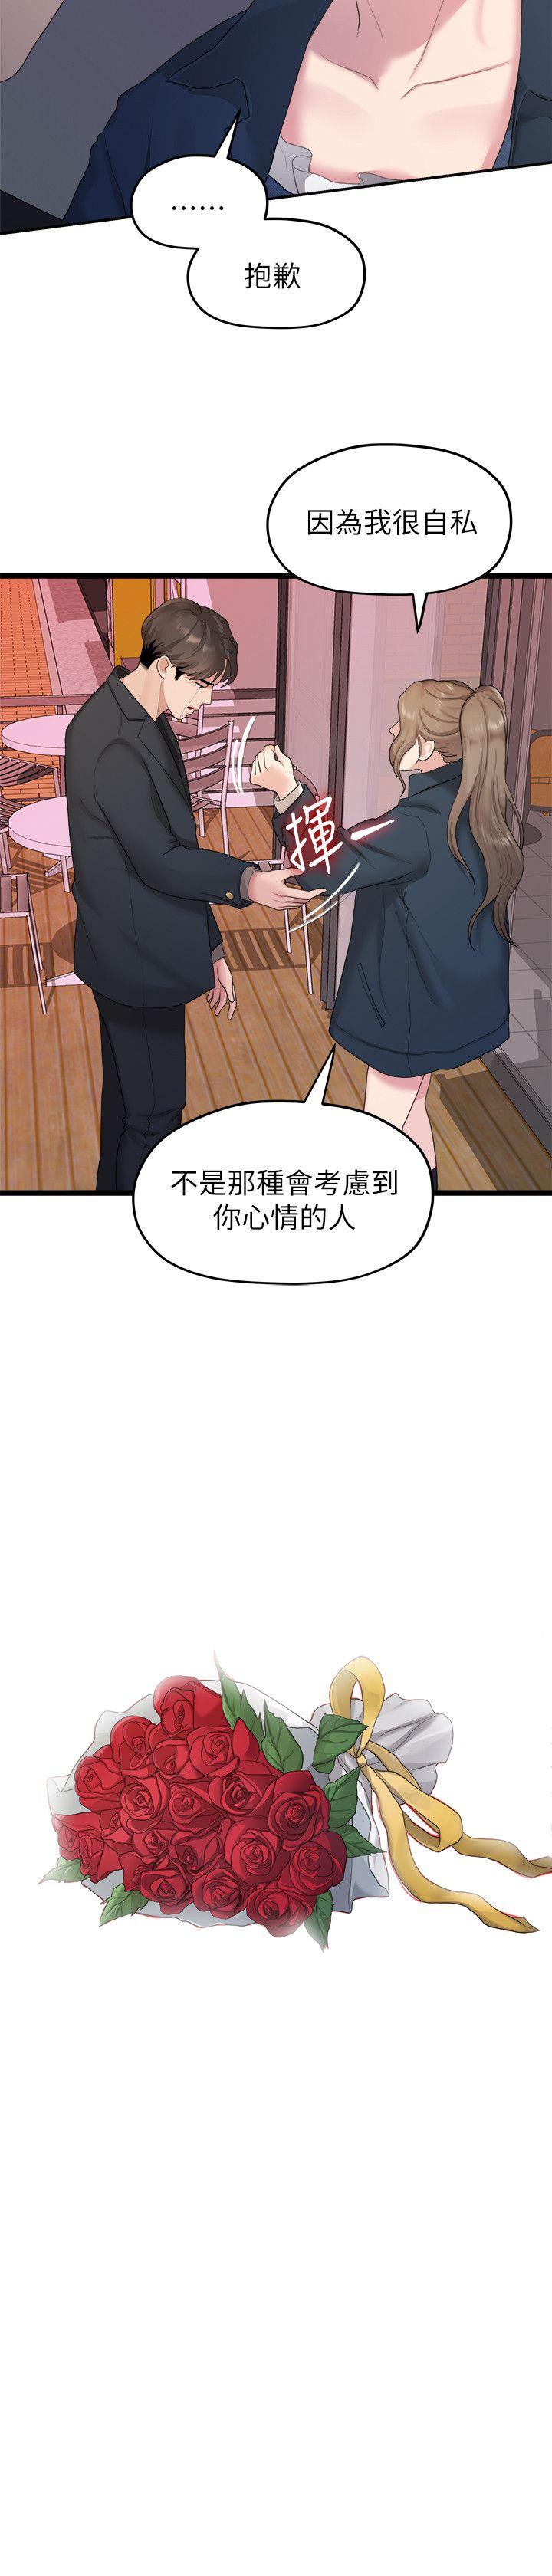 韩国污漫画 我們的非常關系 第20话-相佑与多贤的初次见面 2